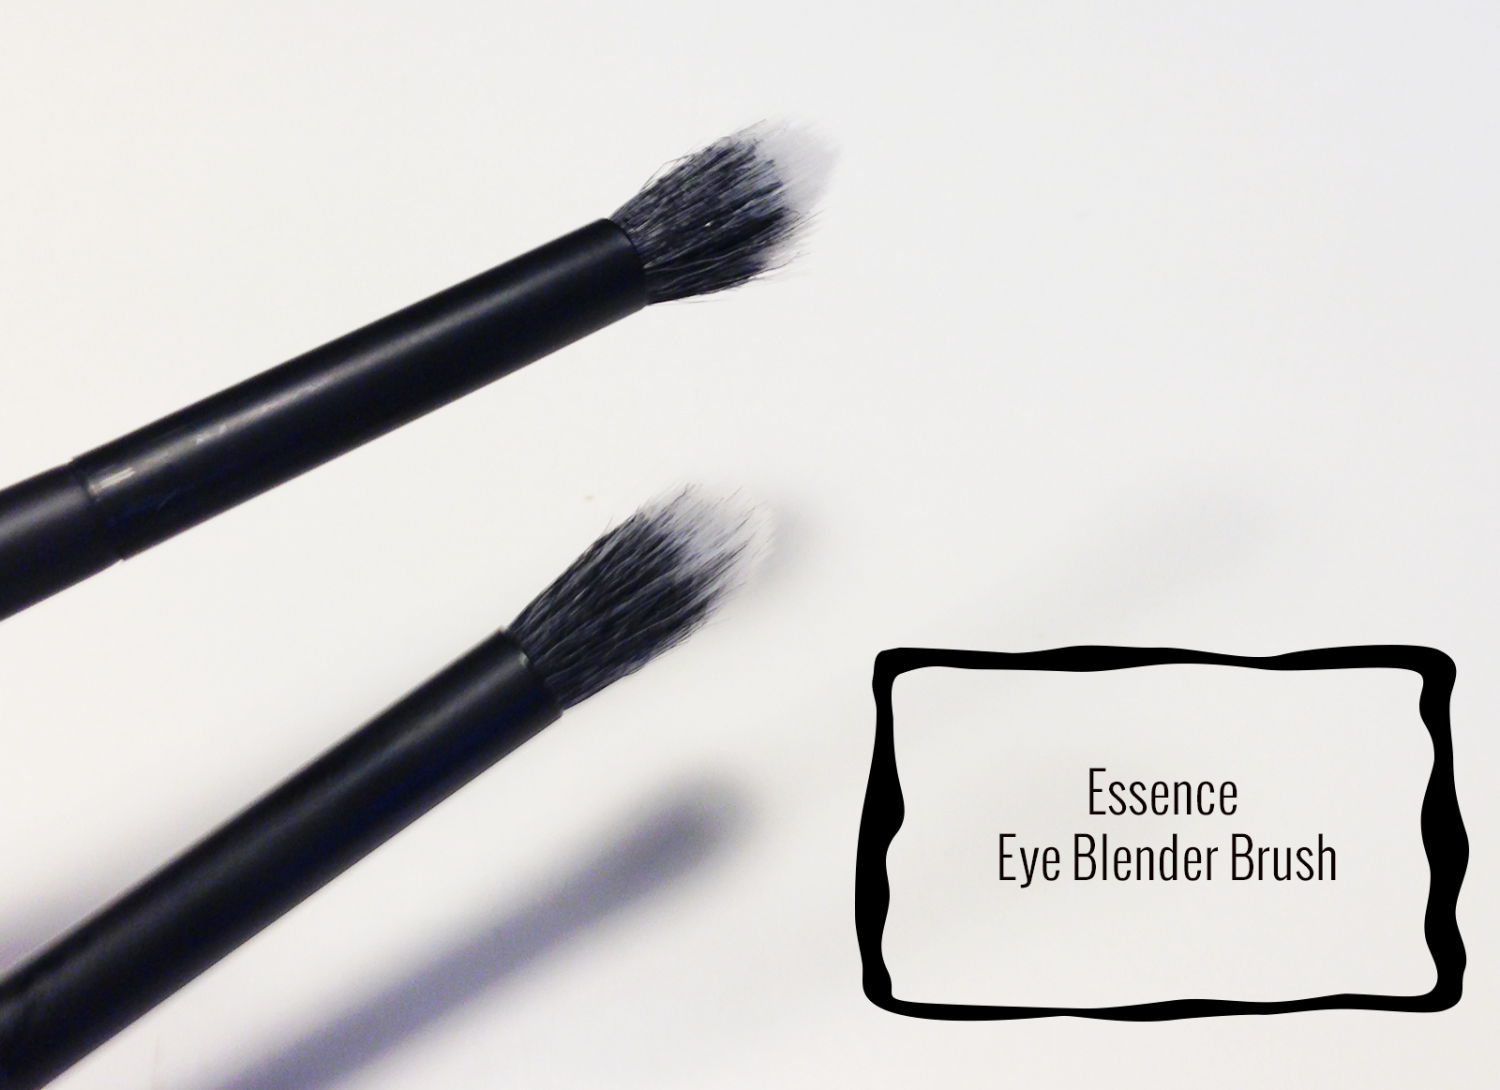 Review: Essence Eye Blender Brush